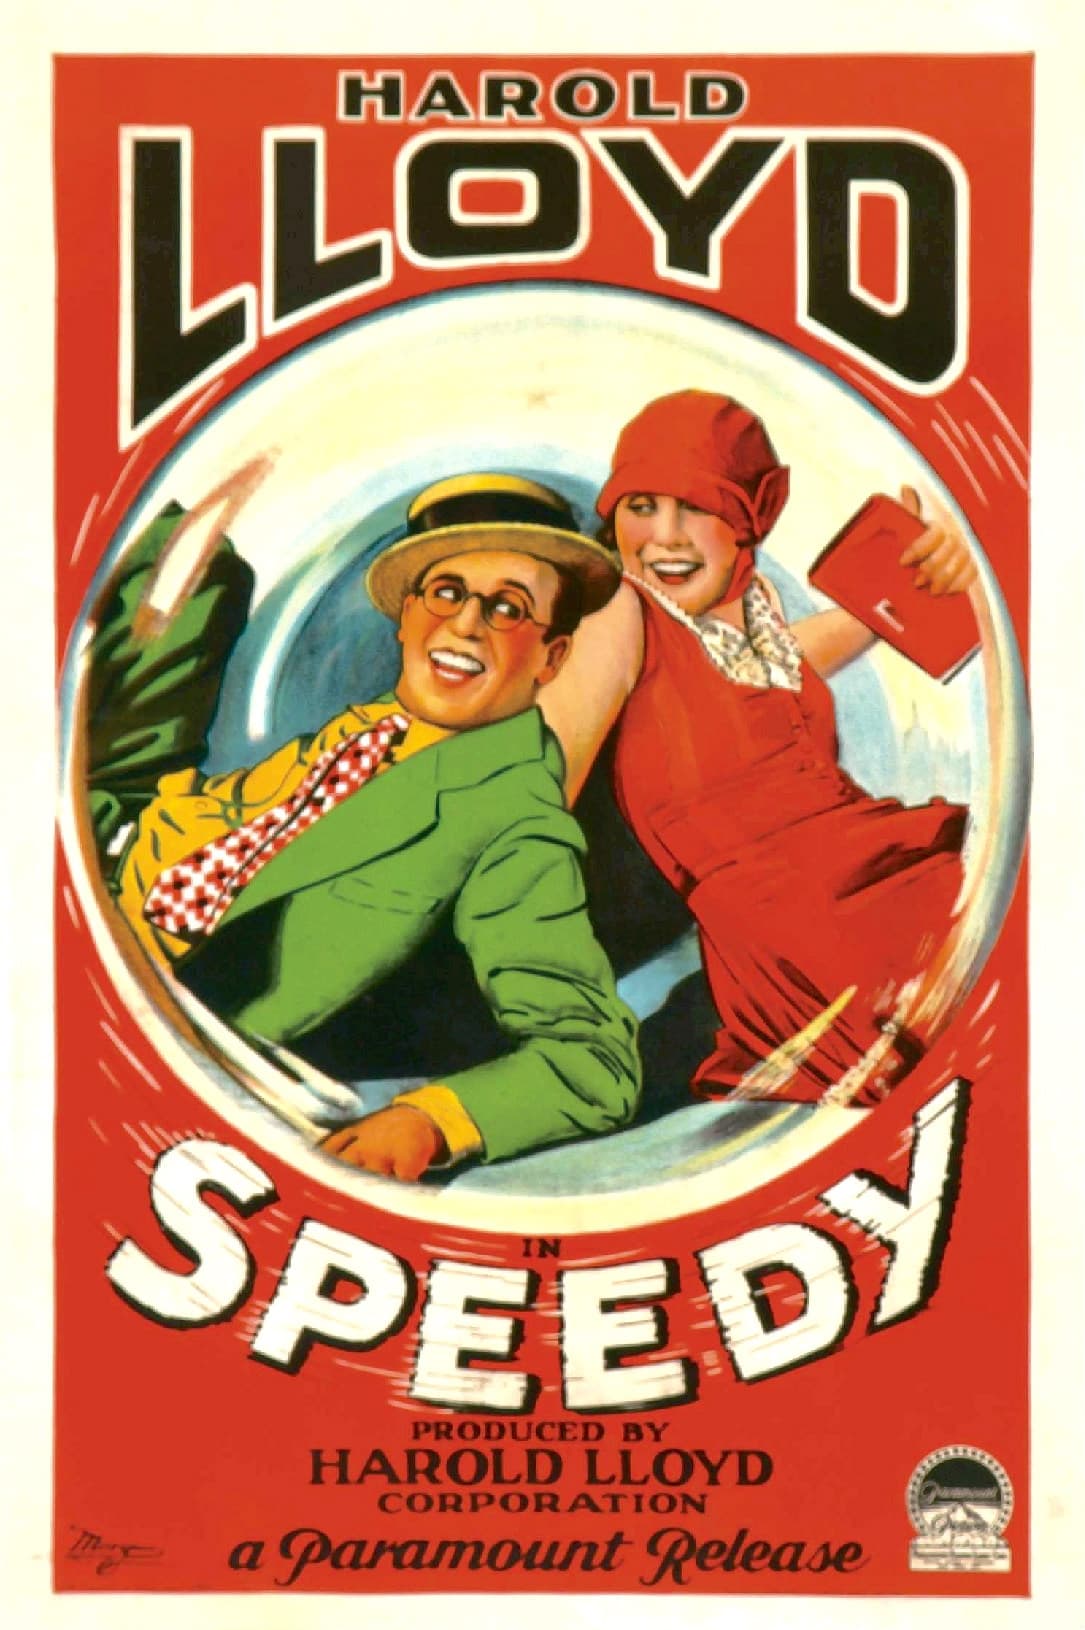 EN - Speedy (1928) HAROLD LLOYD